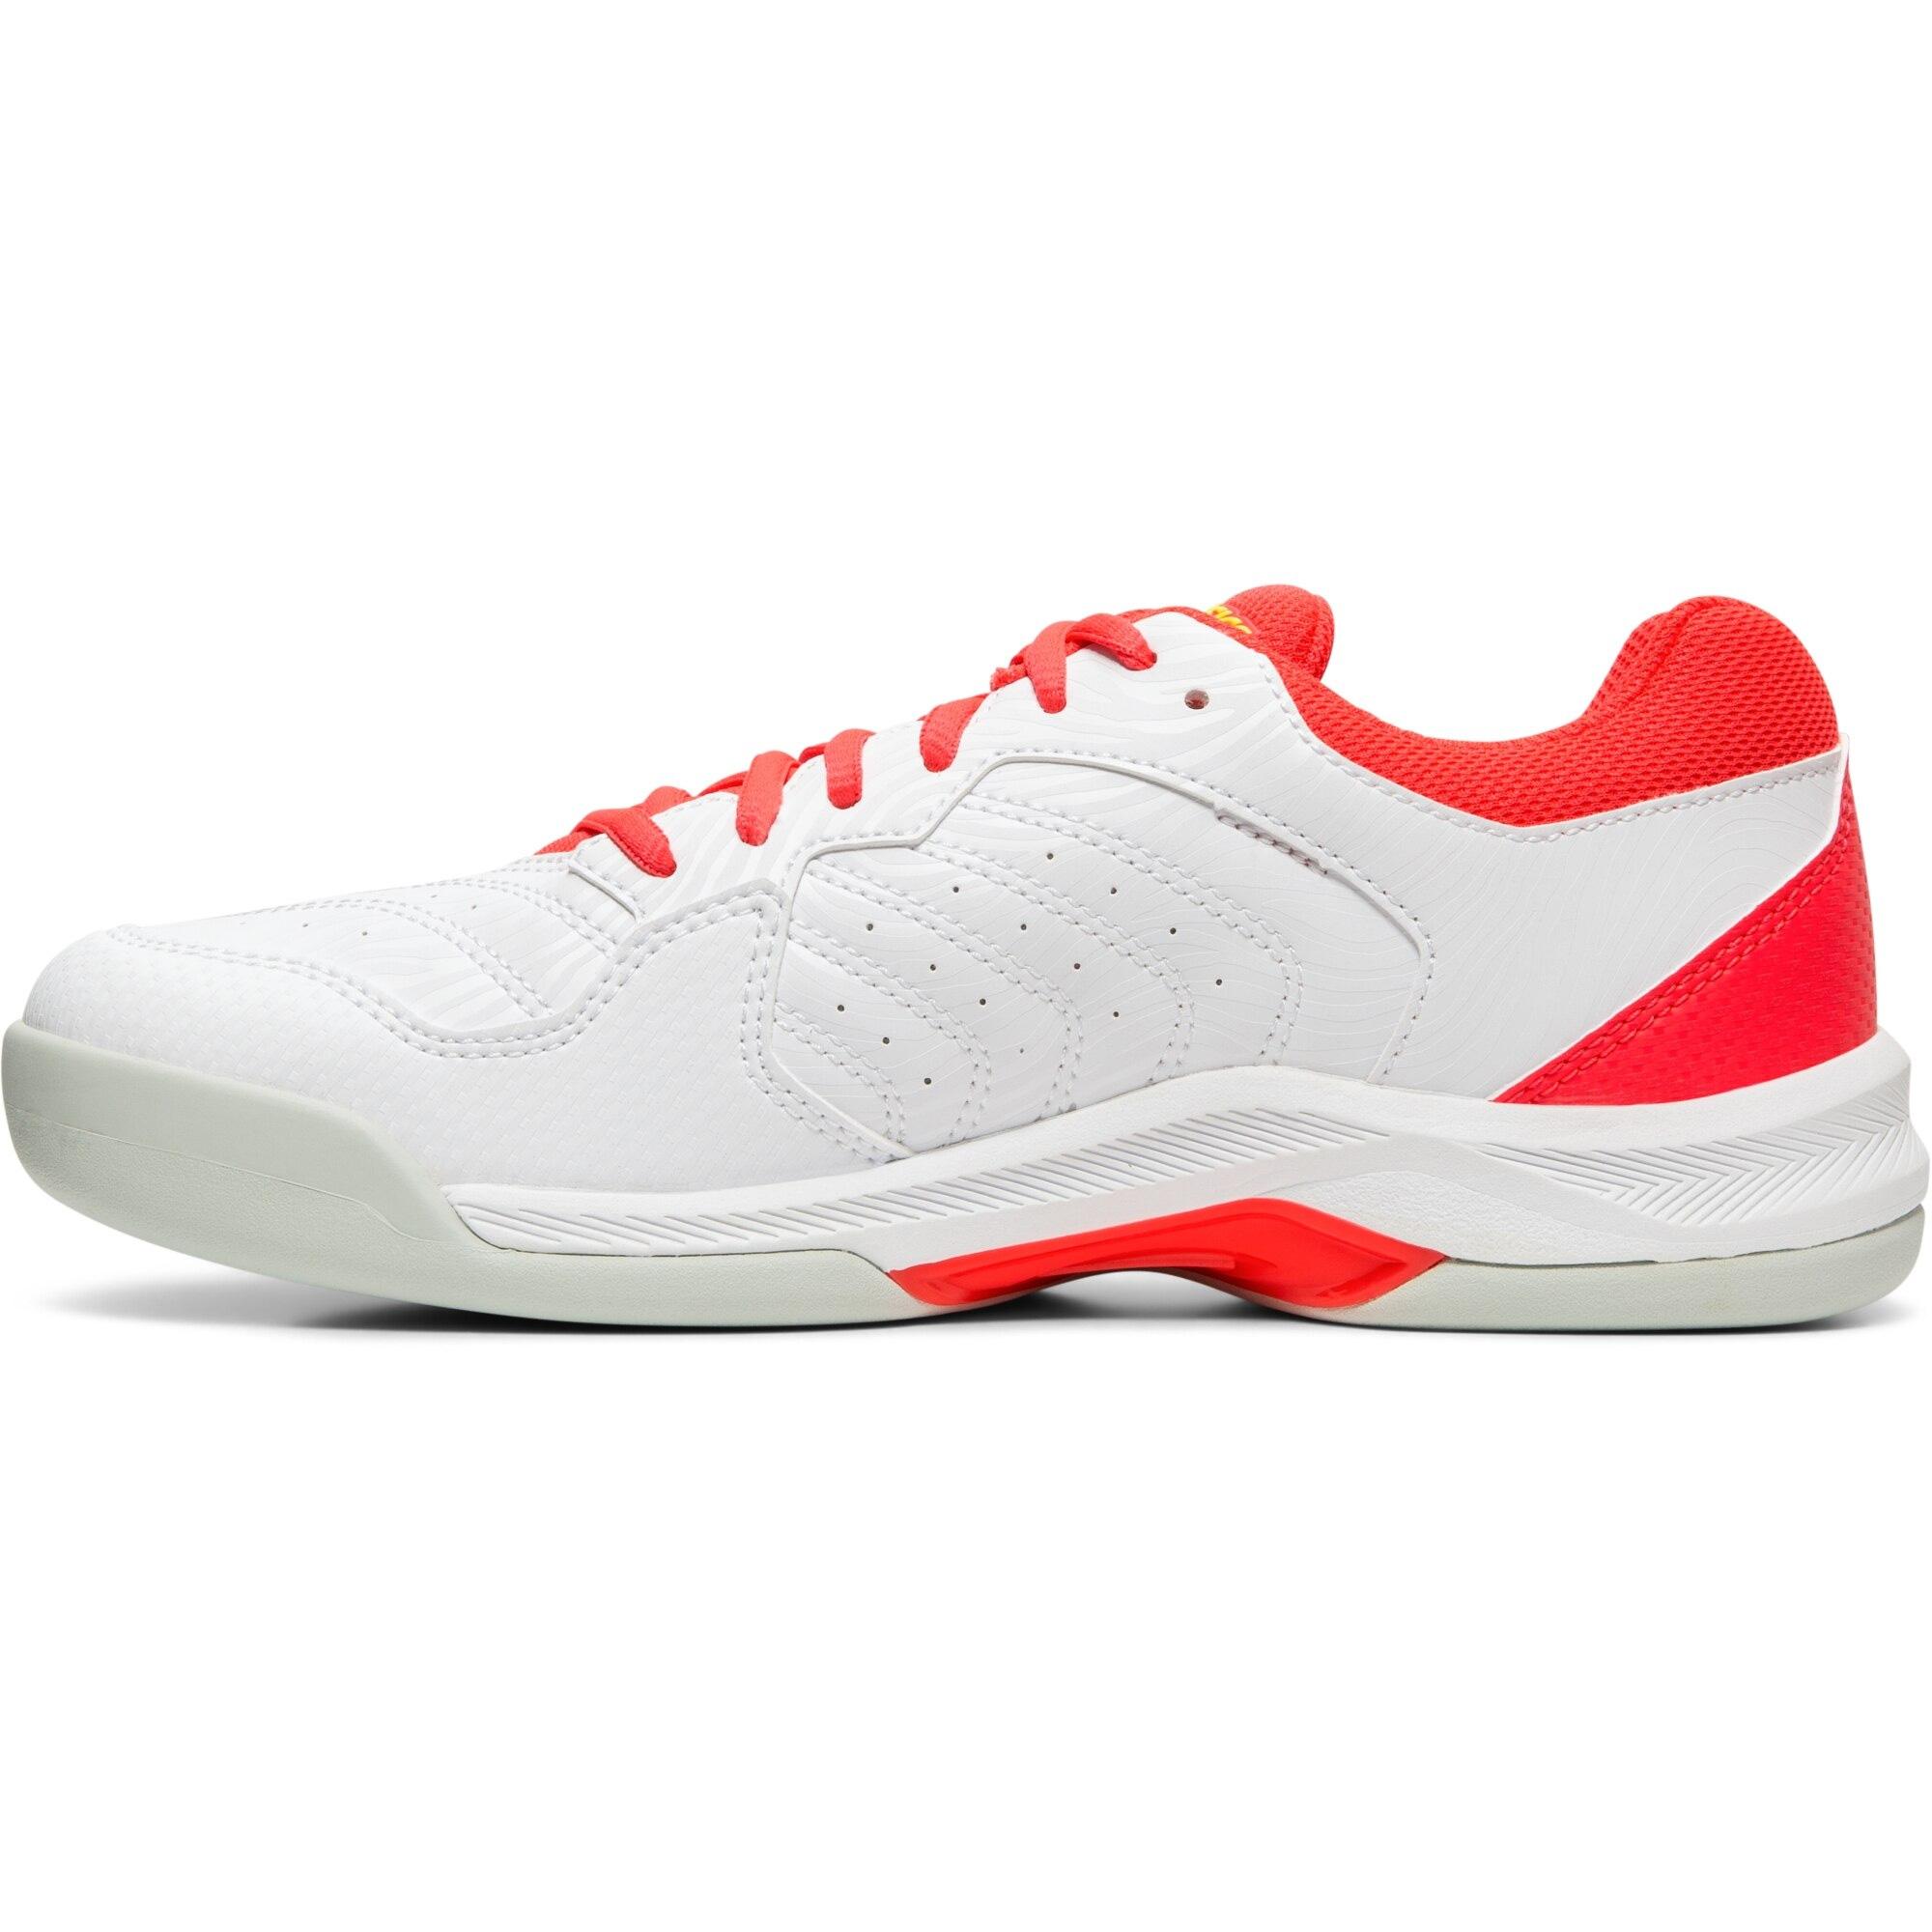 Asics Womens GEL-Dedicate 6 Carpet Tennis Shoes - White/Laser Pink ...